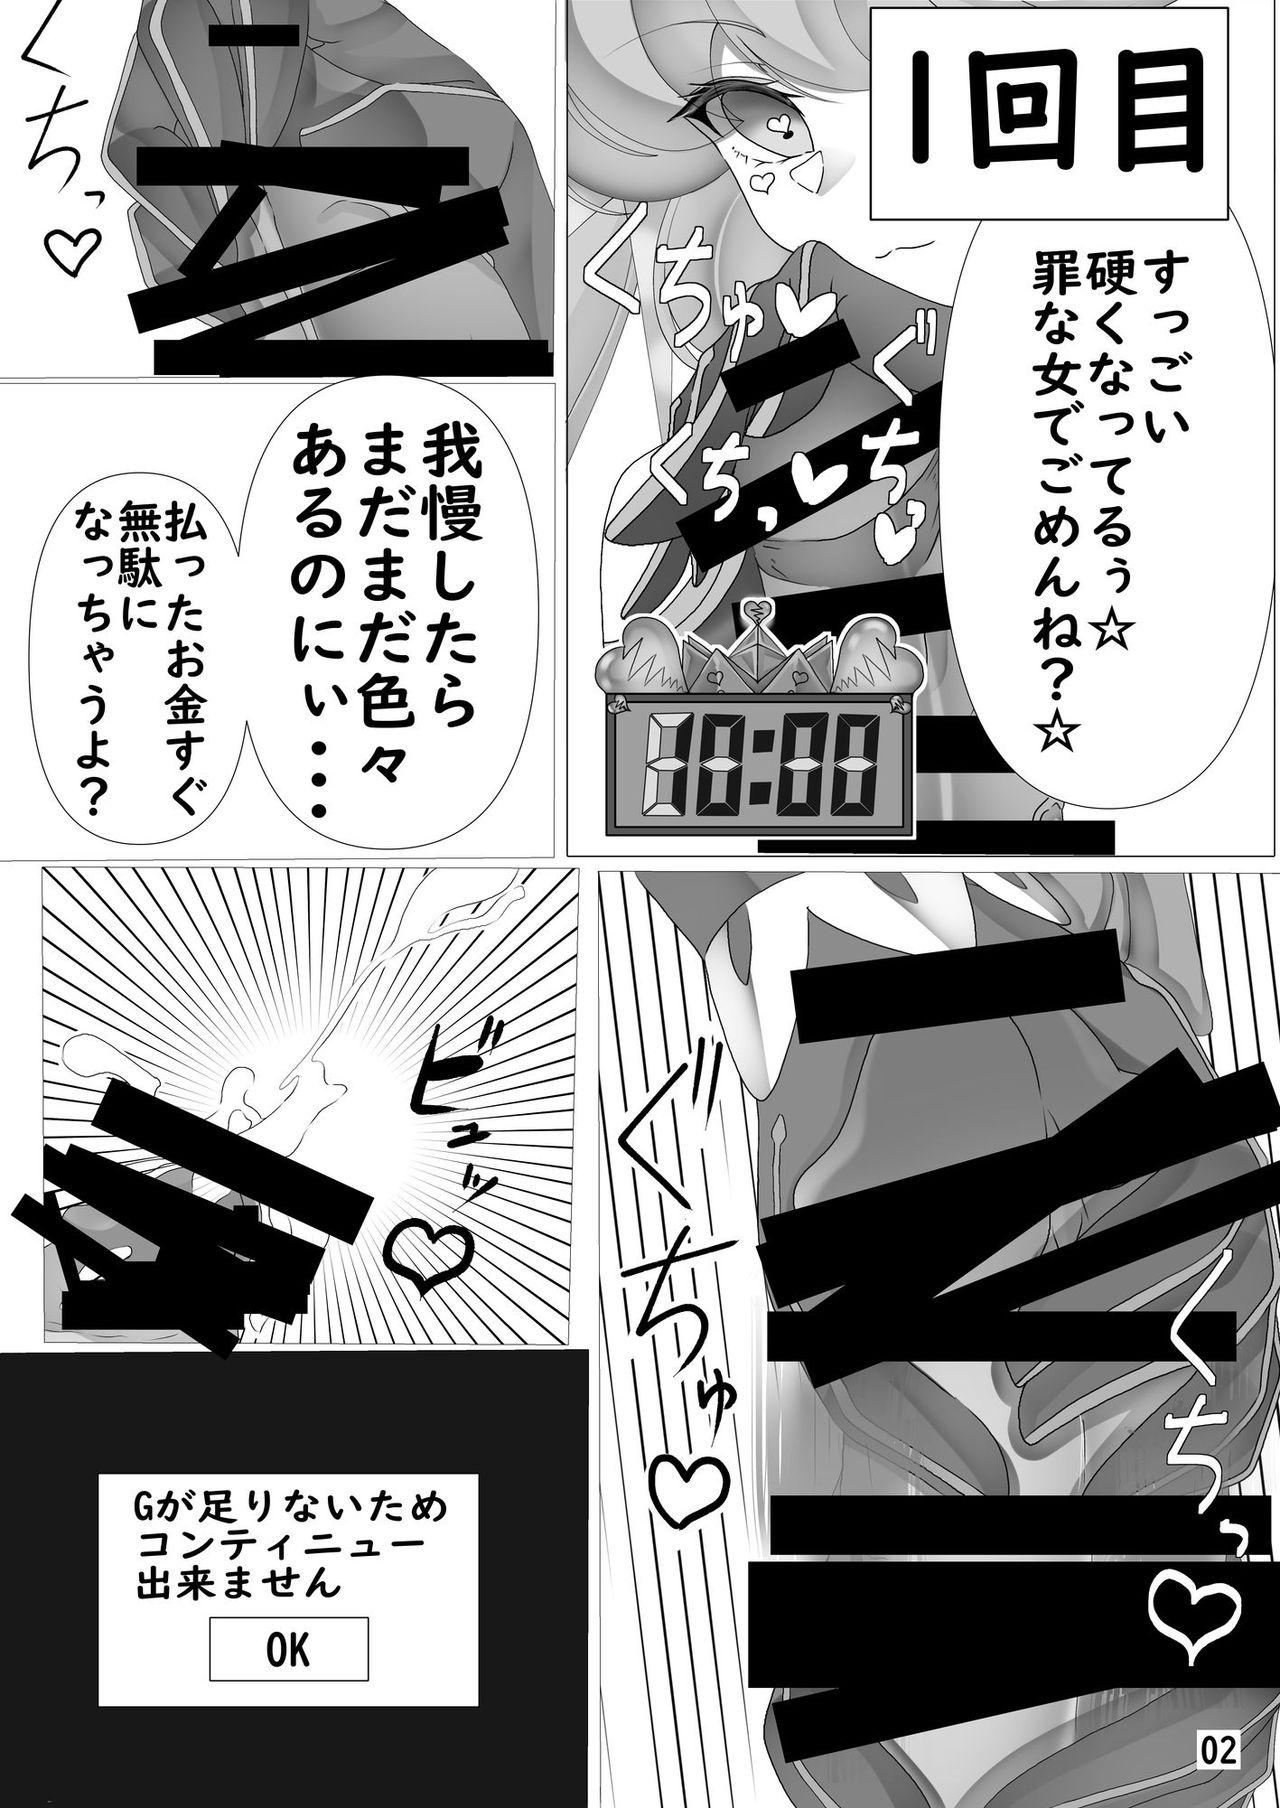 Casero Gaido Takasugi! Saaya Refre - Megido 72 Cougar - Page 3